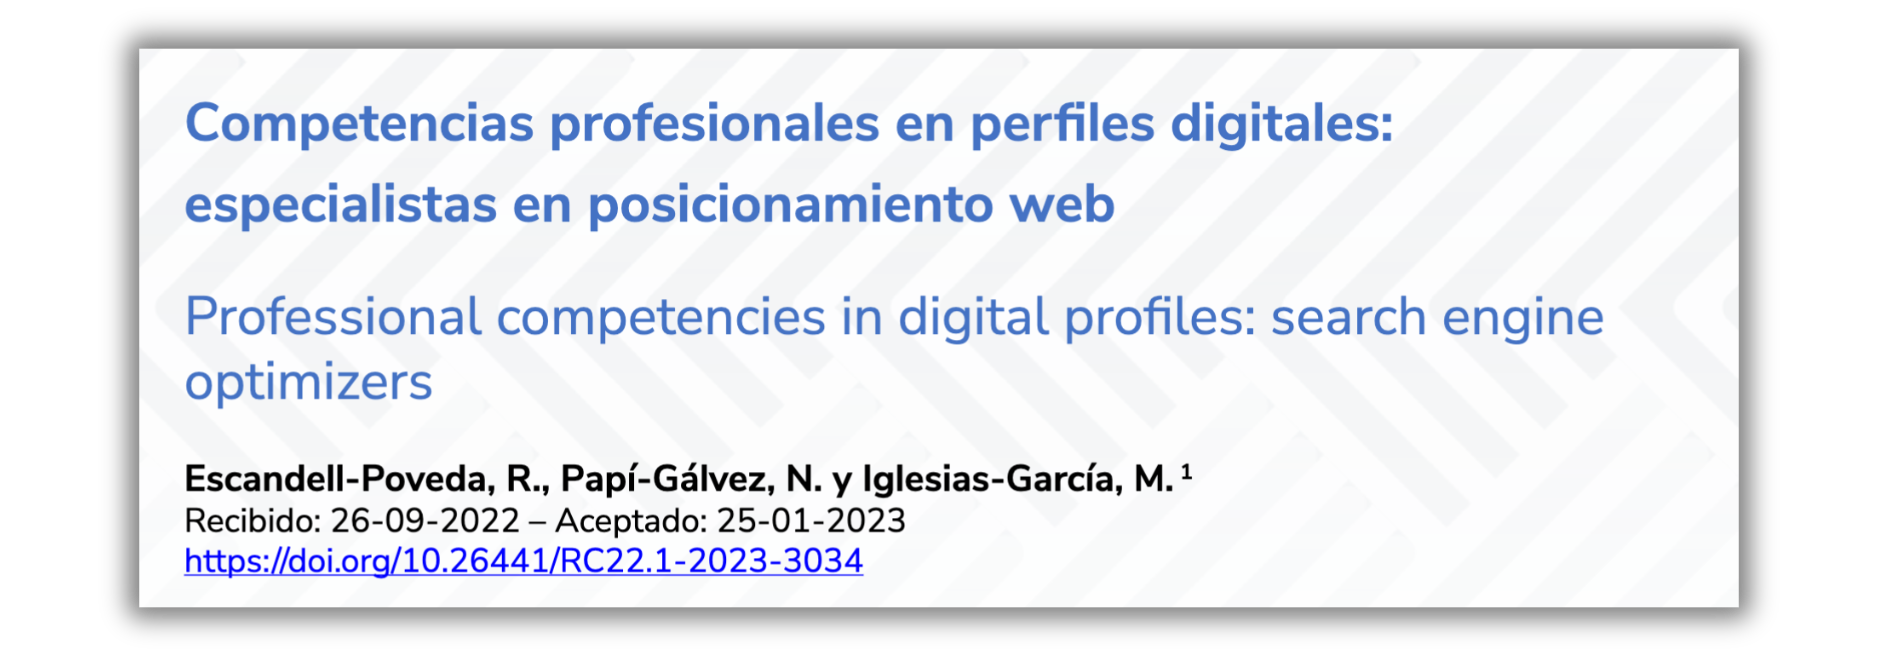 Competencias profesionales en perfiles digitales: especialistas en posicionamiento web [artículo open access]